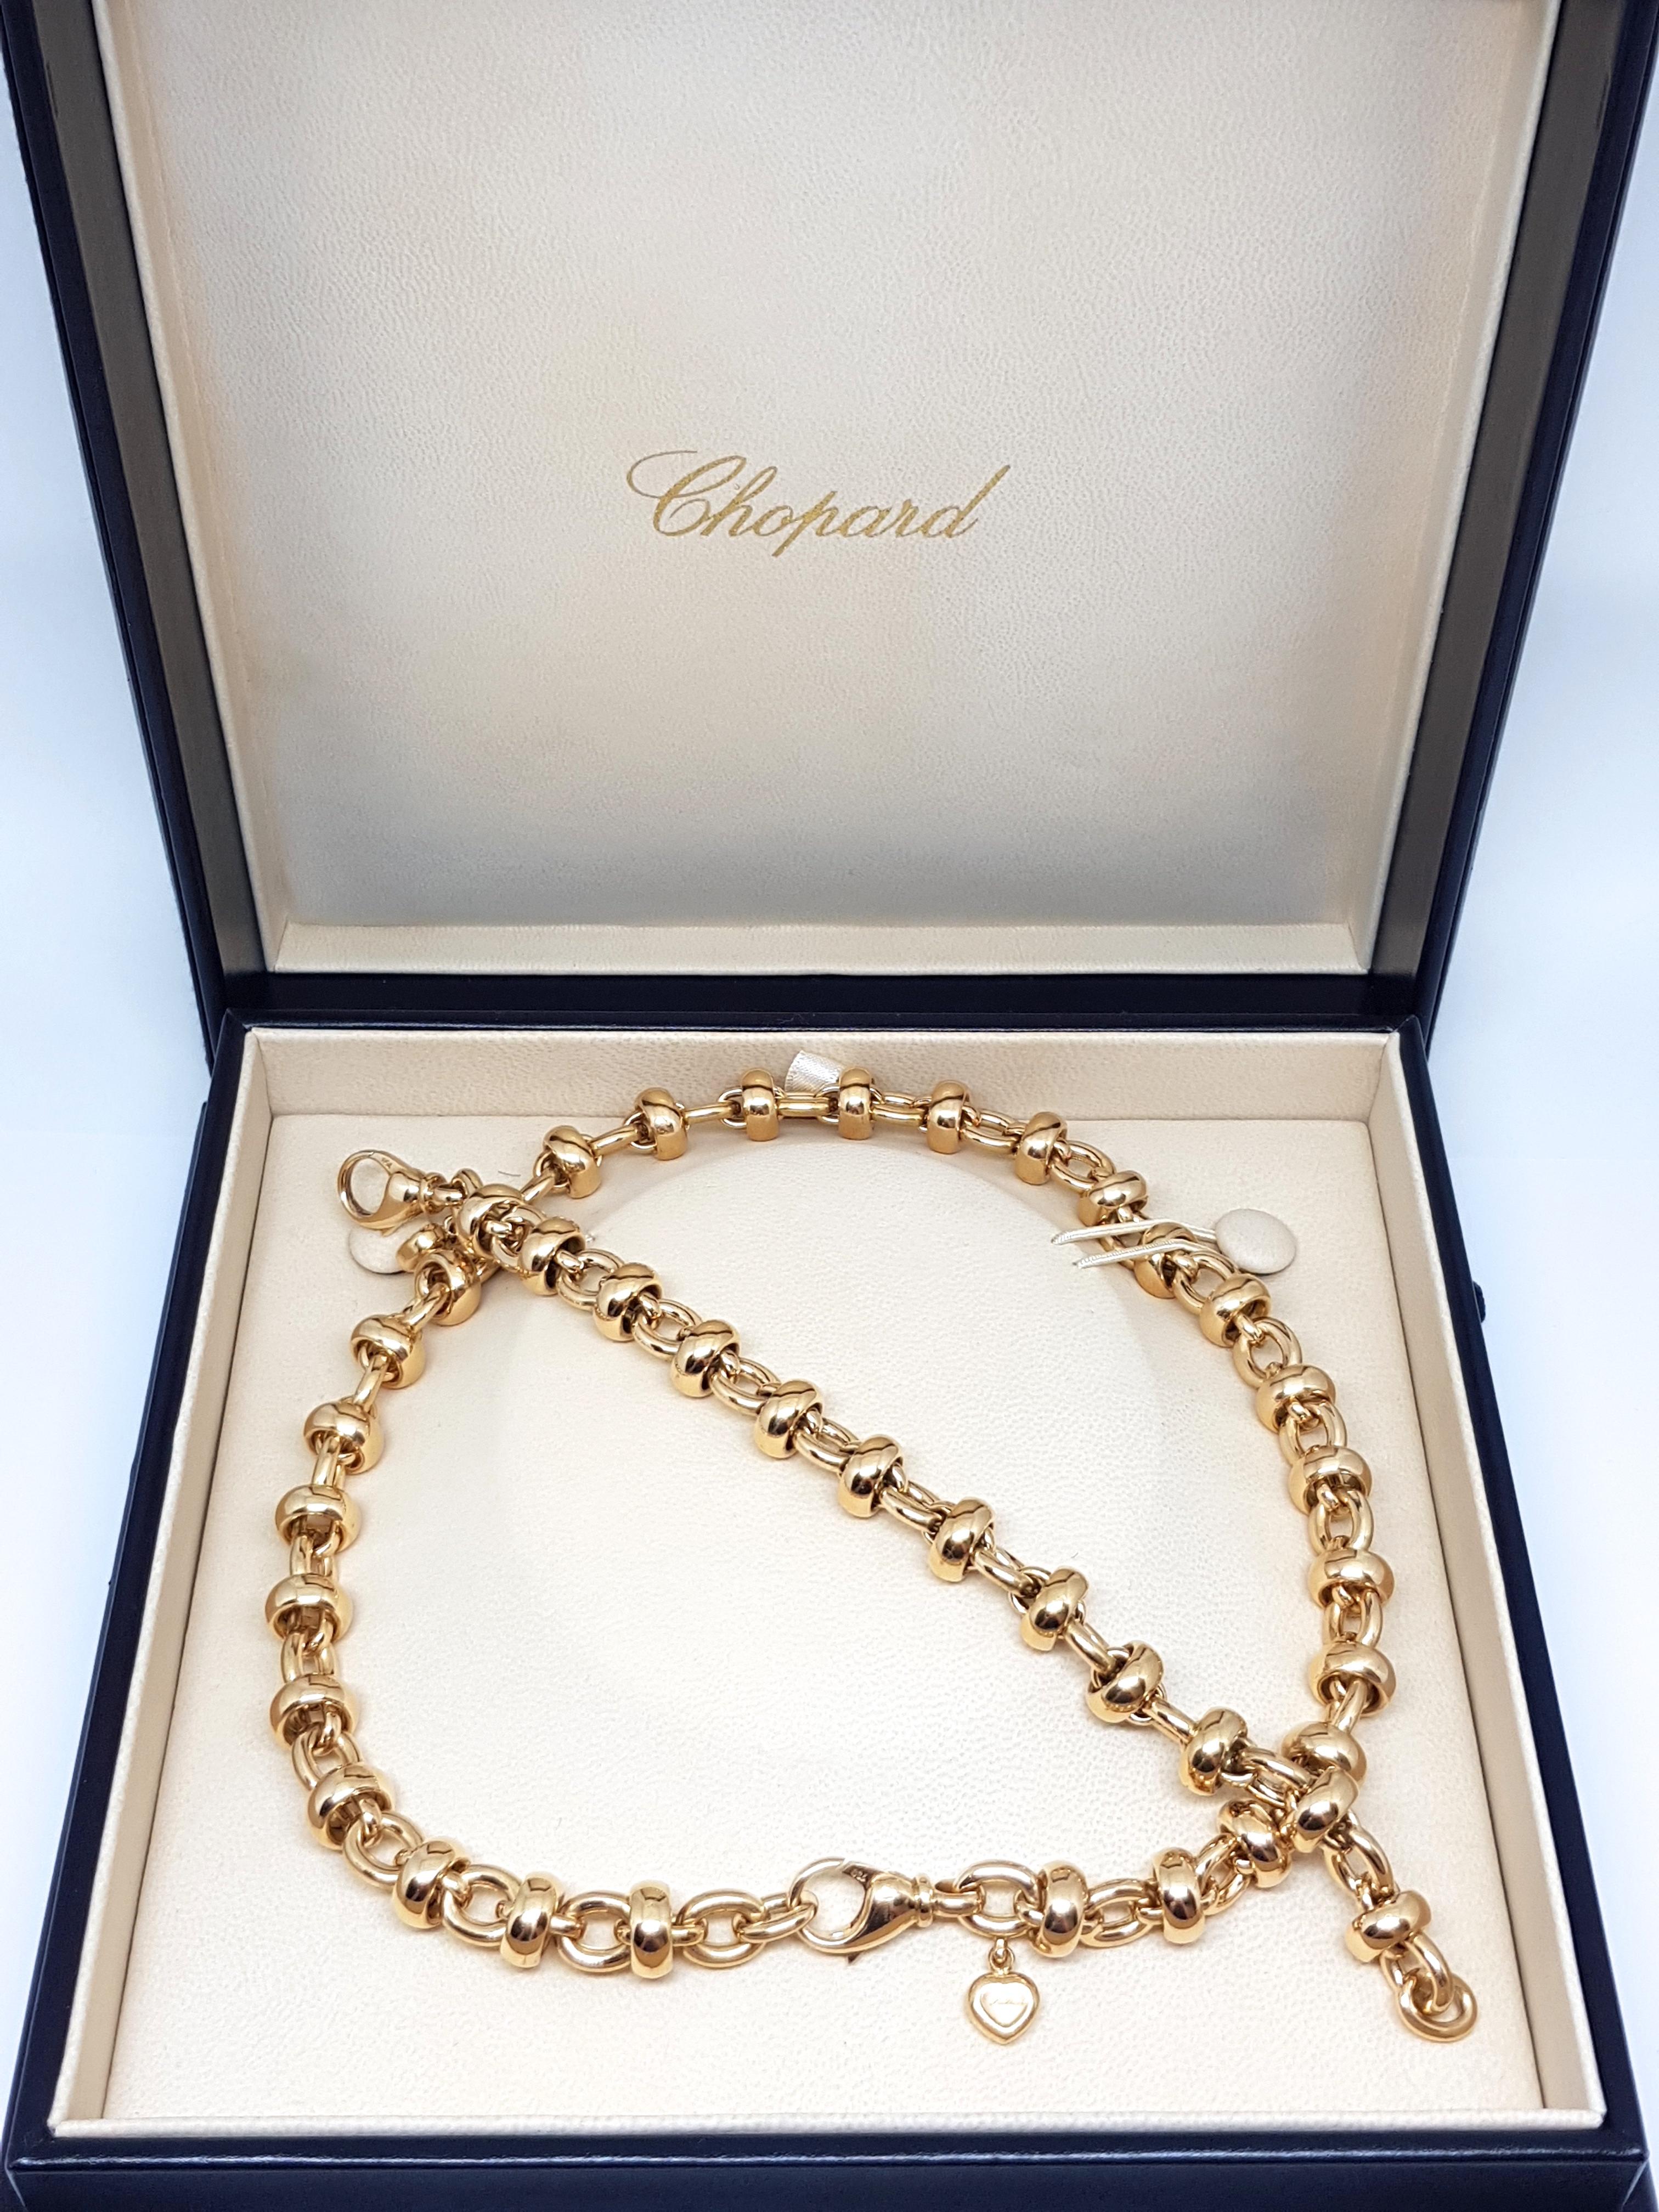 Chopard Les Chaines 18 Karat Yellow Gold Link Necklace Bracelet Set Original Box 8